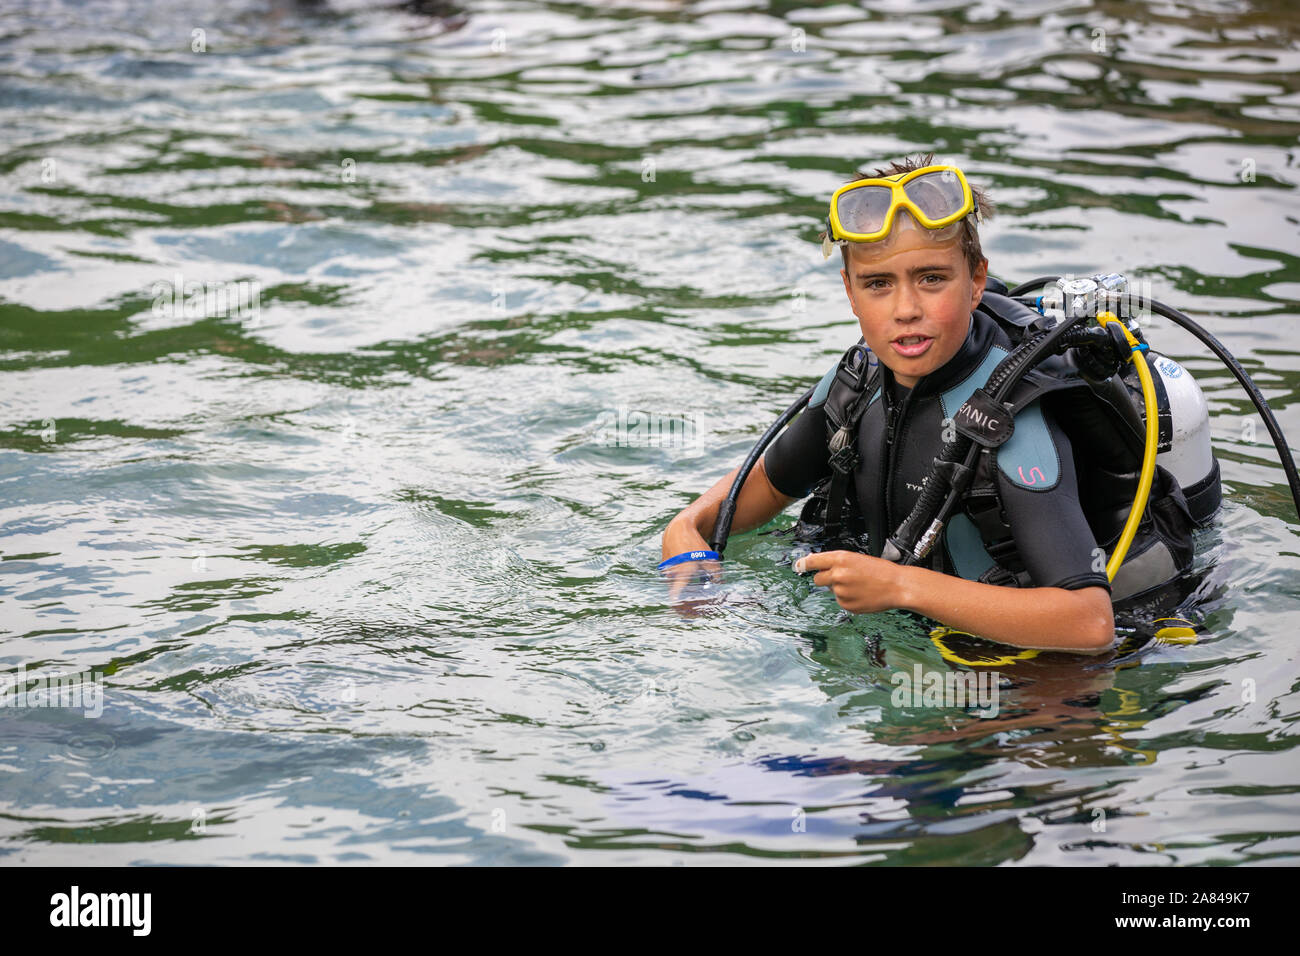 Un jeune garçon portant un costume de plongée dans l'eau. Banque D'Images